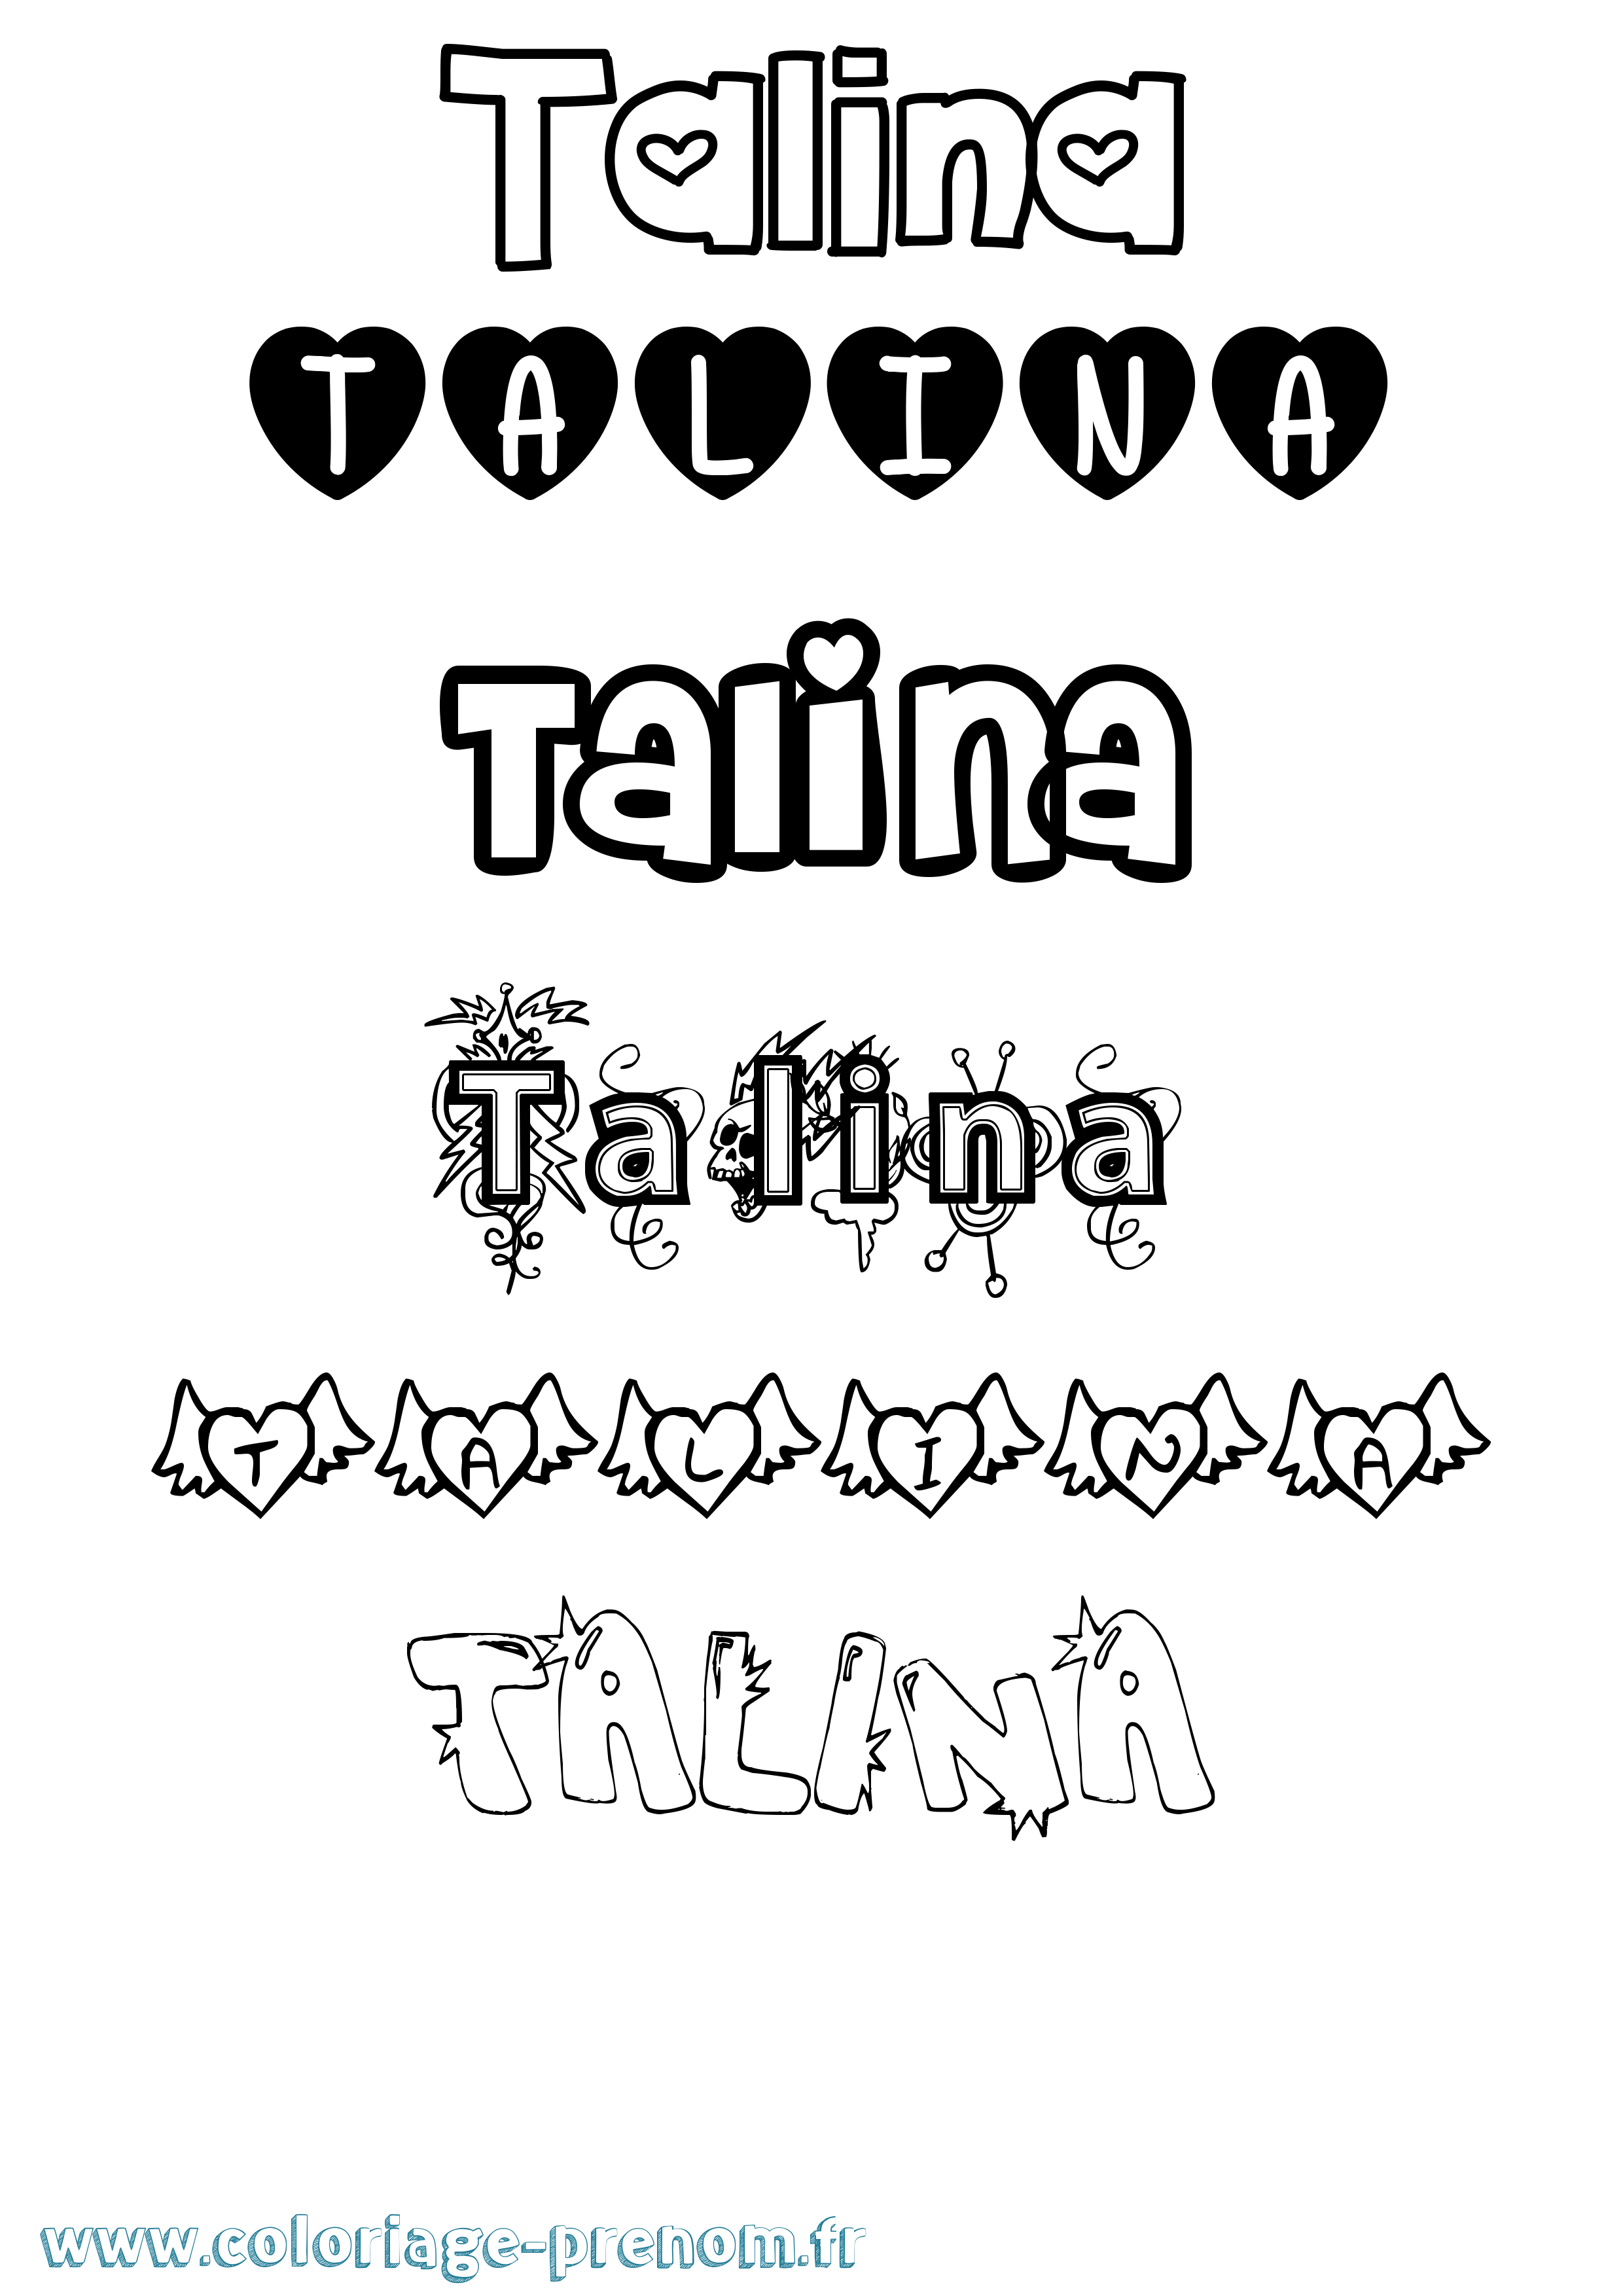 Coloriage prénom Talina Girly